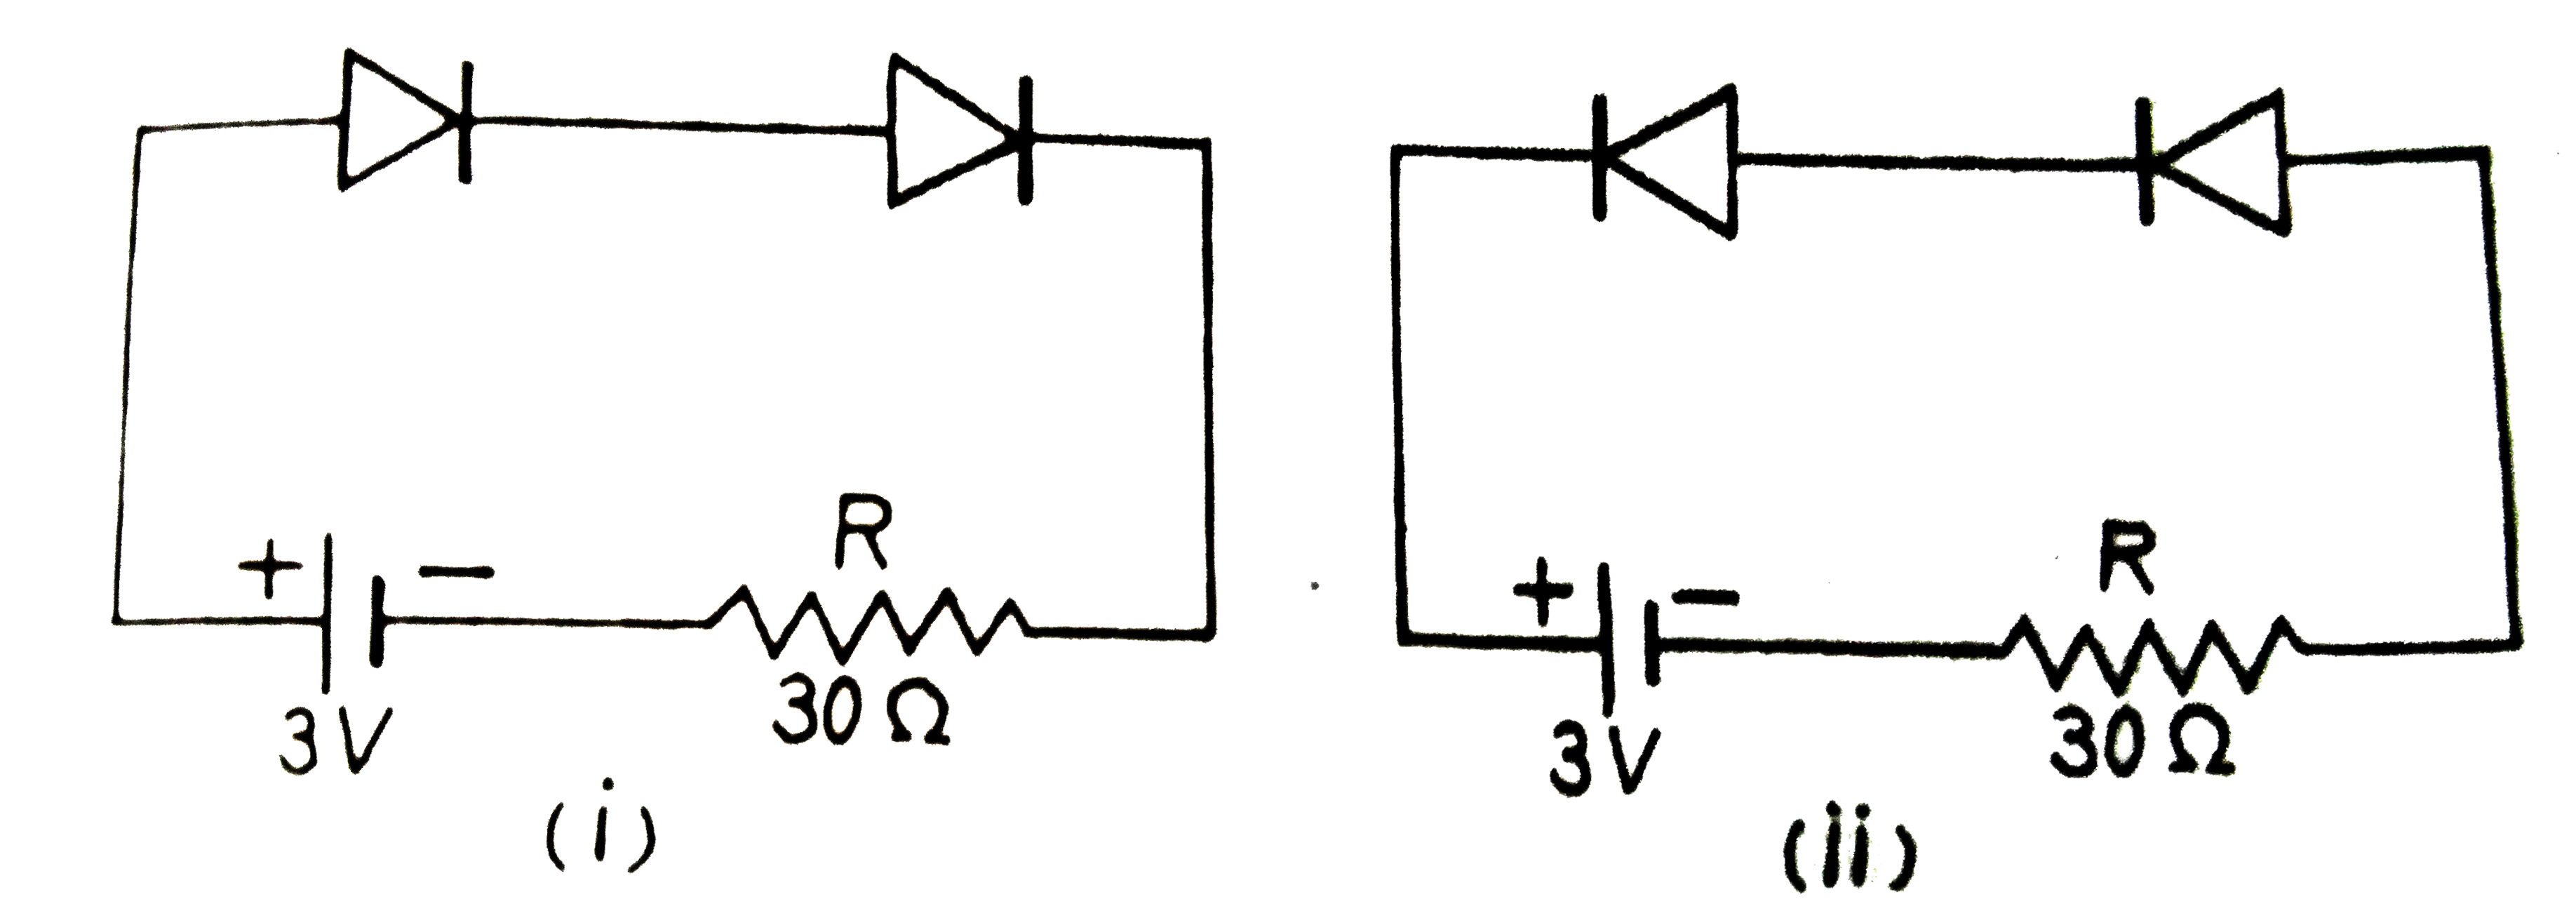 दो आदर्श सन्धि डायोड चित्र (i ) तथा (ii ) के अनुसार जोड़े गए हैं। प्रत्येक में प्रतिरोध R में होकर प्रवाहित होने वाली धारा ज्ञात कीजिए :